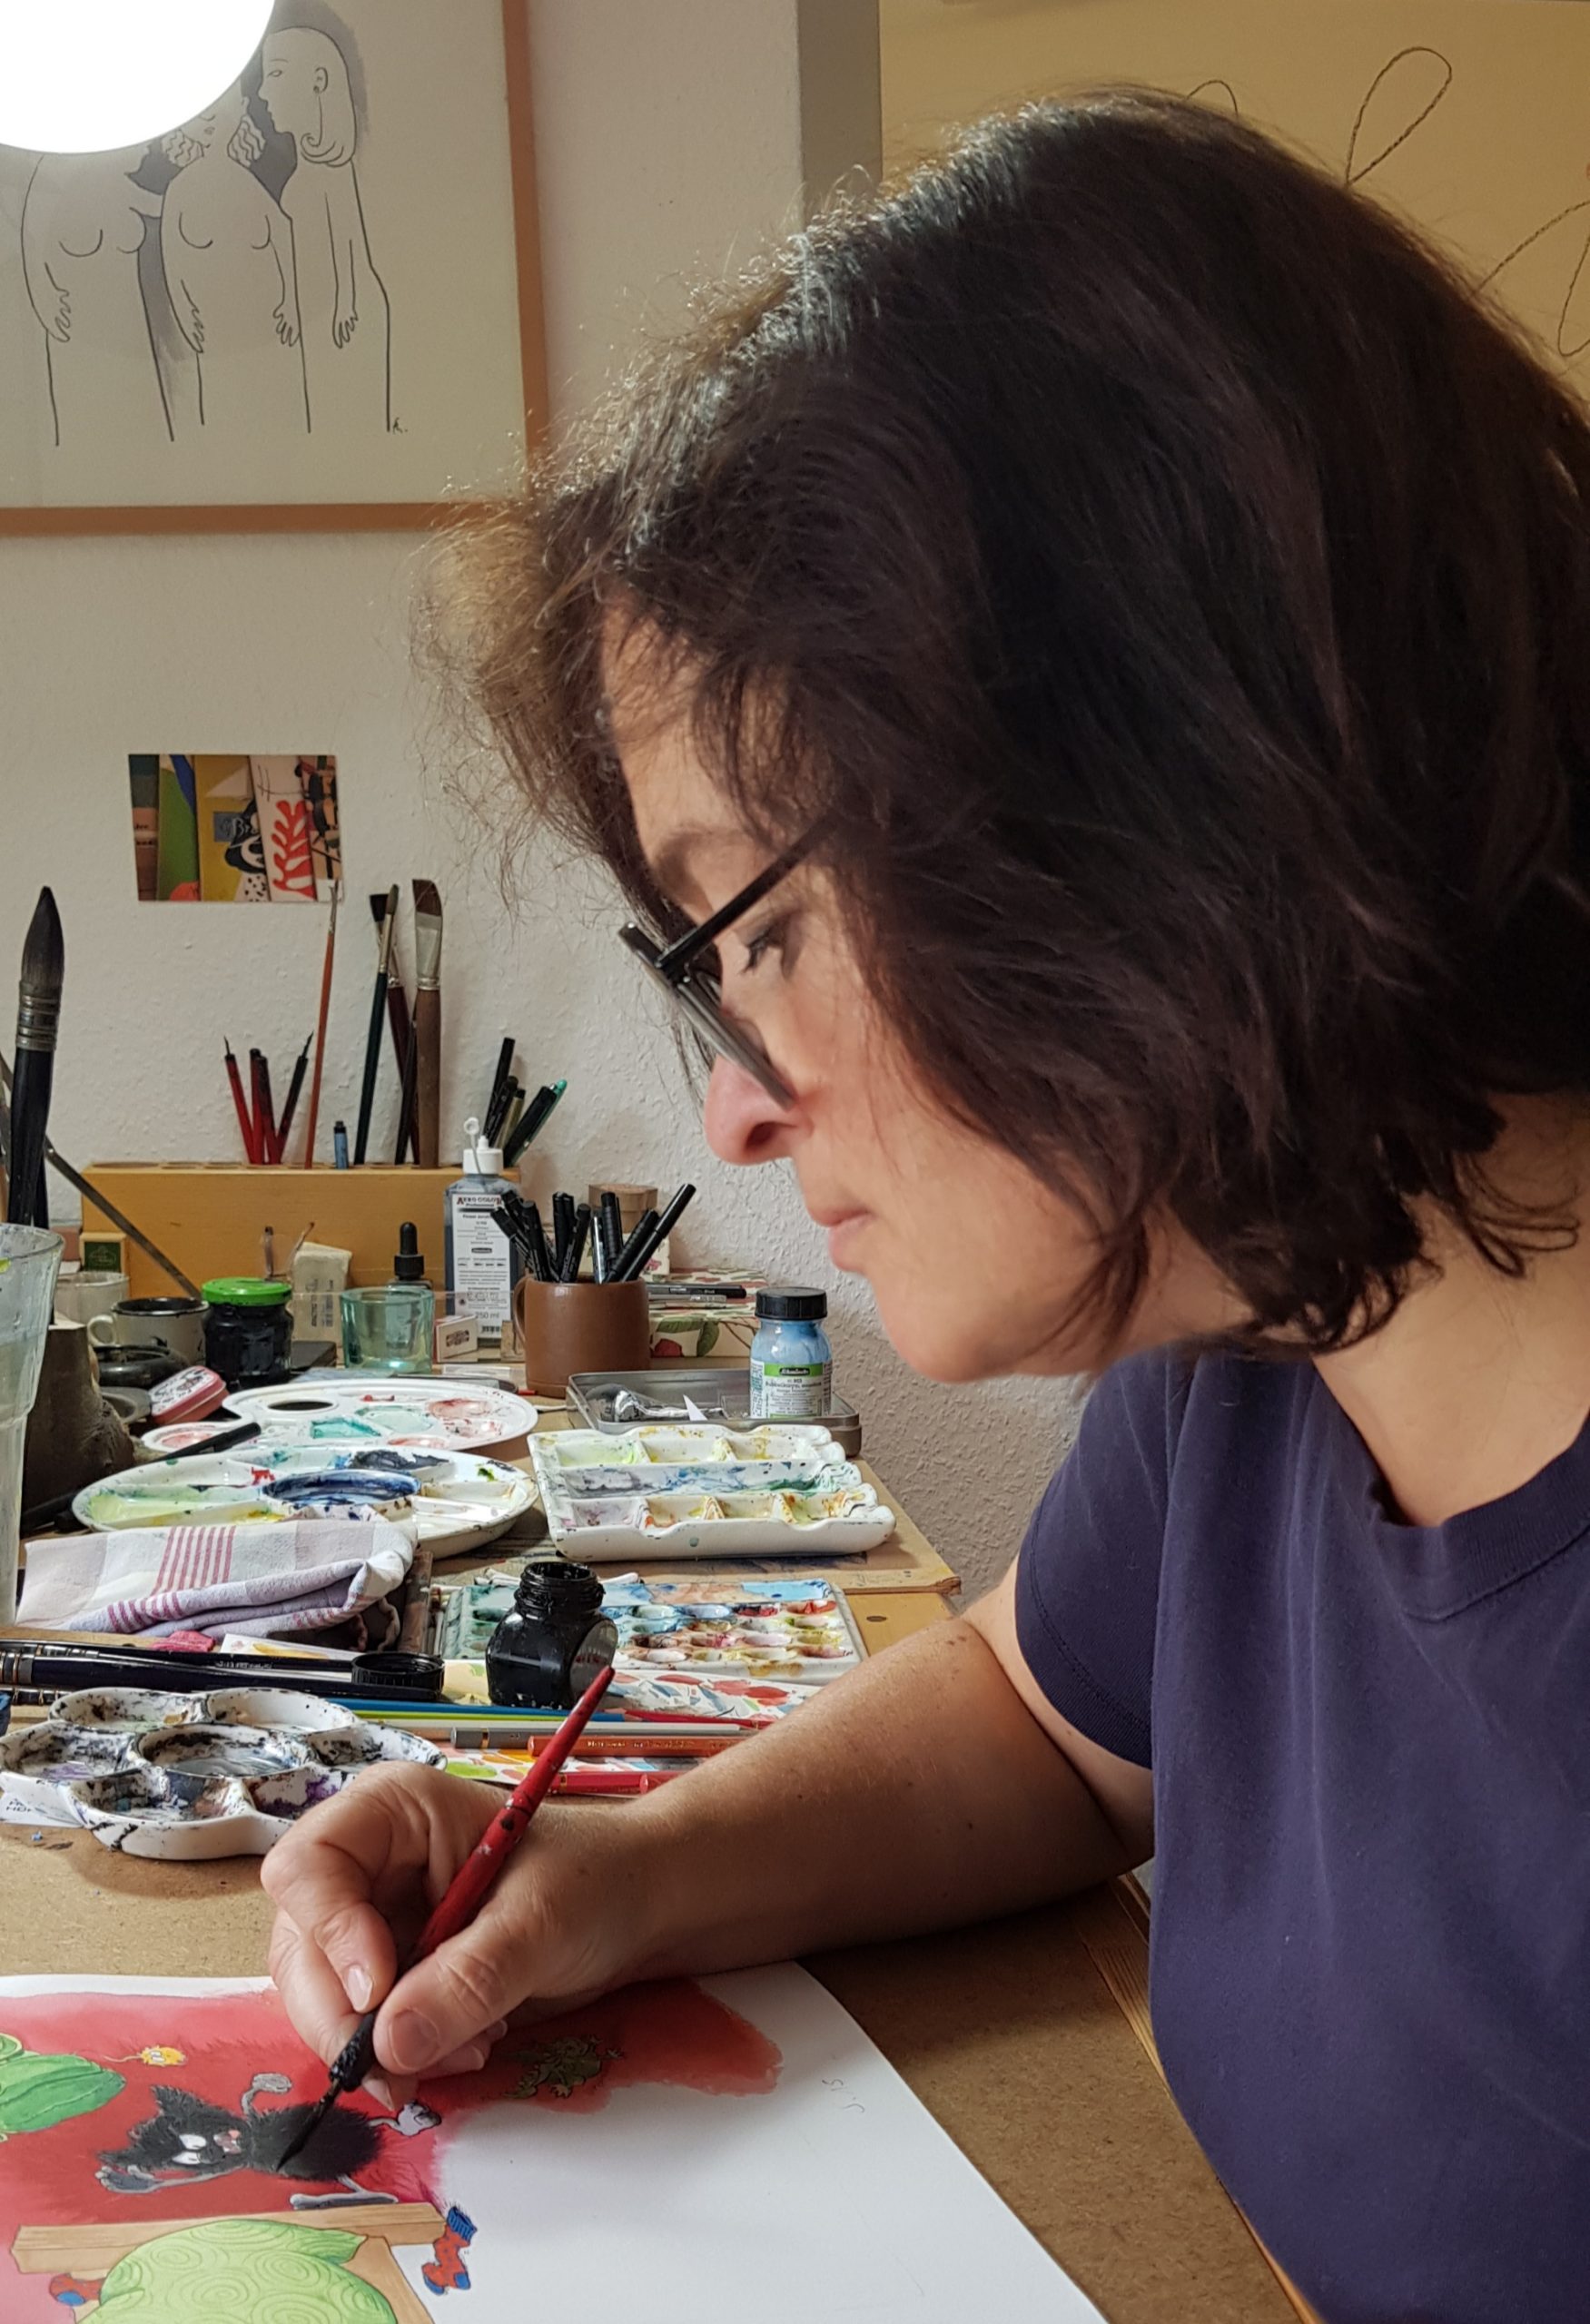 Franzsika sitzt mit Brille im Atilier und zeichnet an einem MUffelmonster. Sie ist von der Seite fotografiert und scahut konzentriert auf den Stift in ihrer Hand